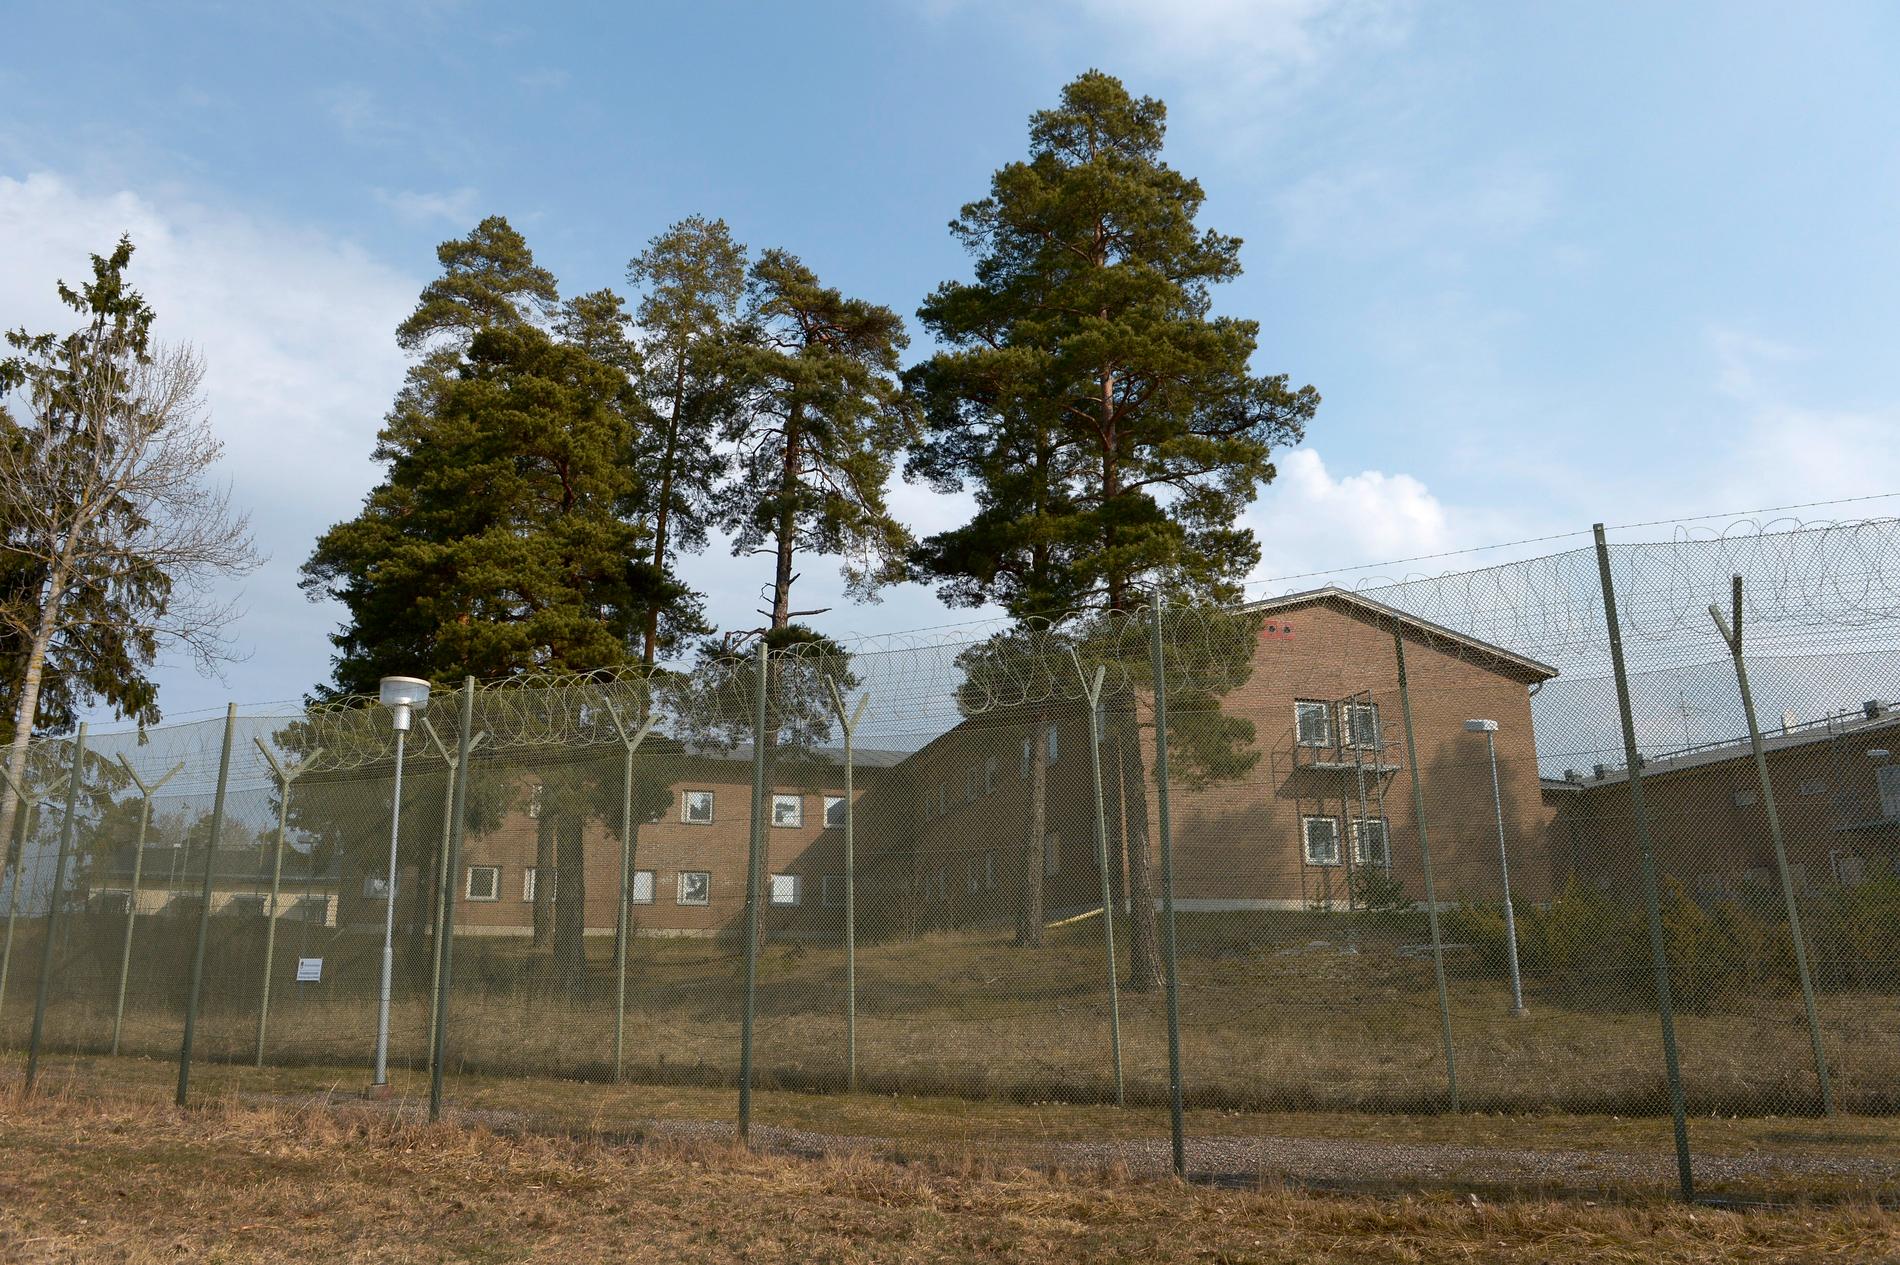 Storboda är en sluten anstalt med säkerhetsklass två. Där sitter 78 personer, de flesta dömda till längre fängelsestraff.